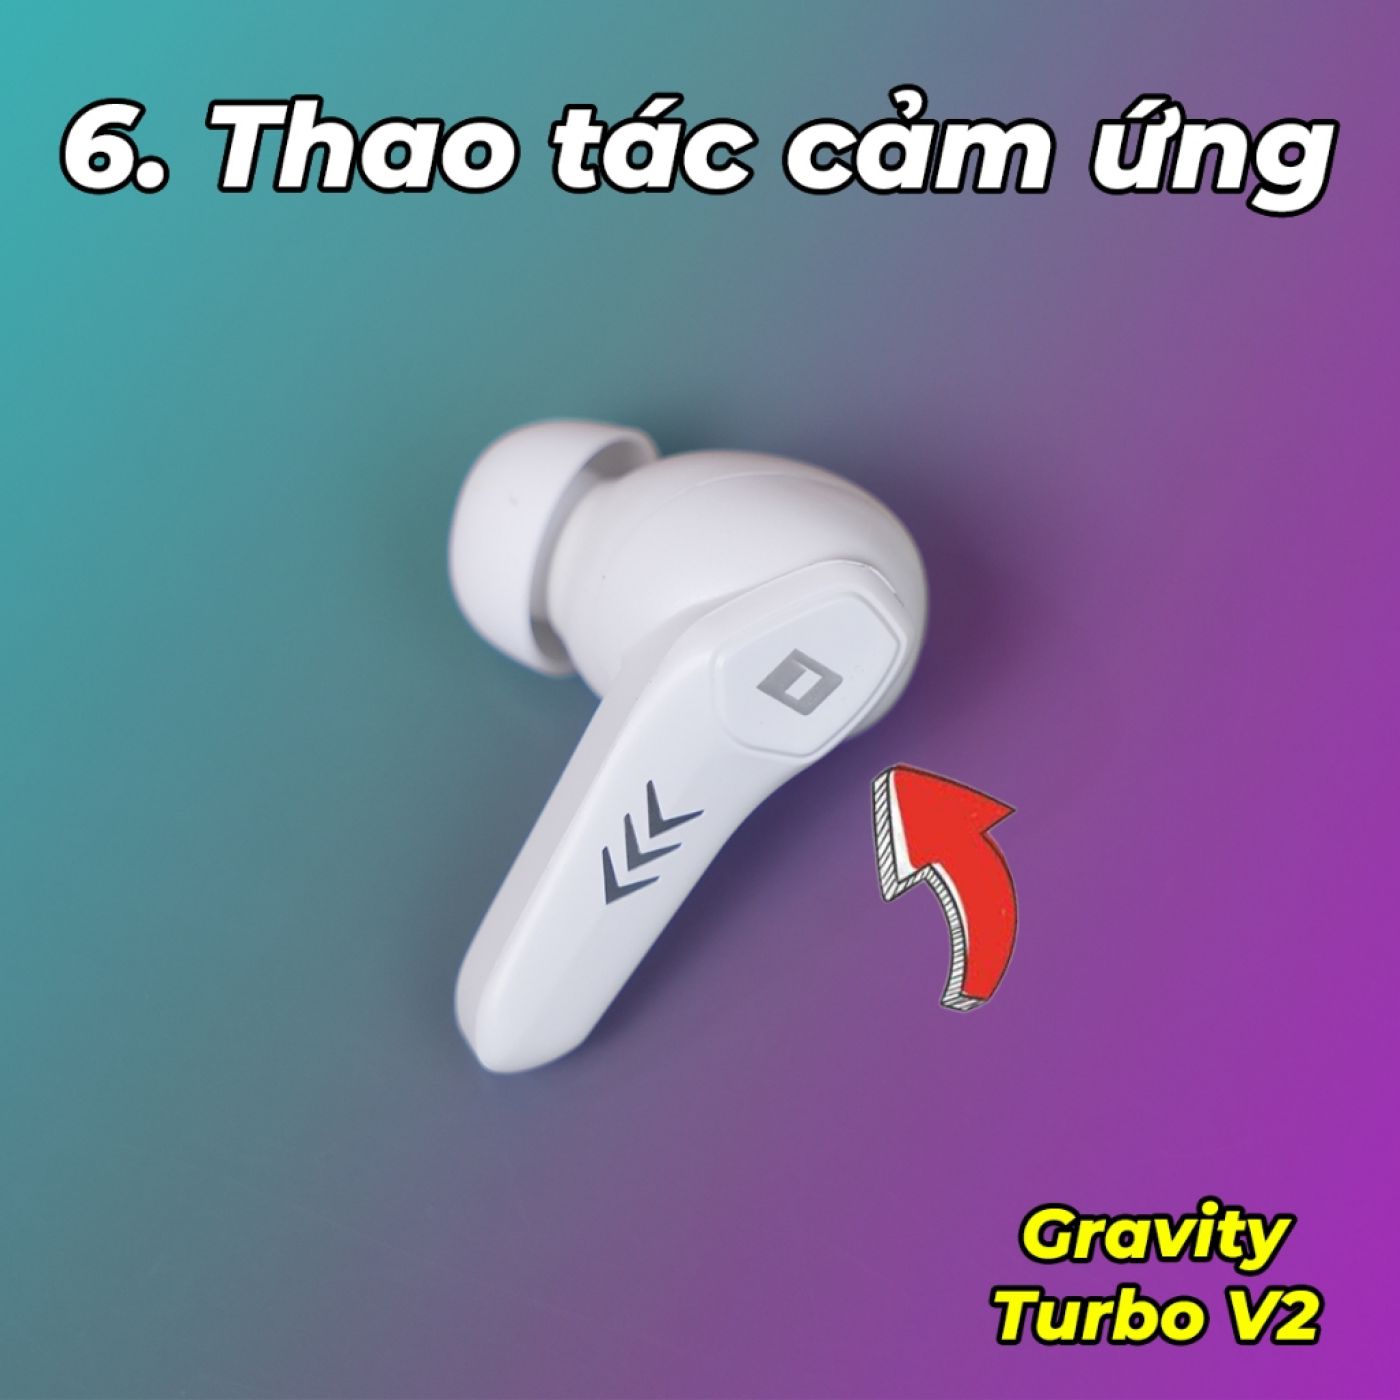 Tai Nghe Gravity Turbo V2 - Game Mode 50MS, Bass Mạnh, Pin Trâu, Chống Nước IPX4, Gaming